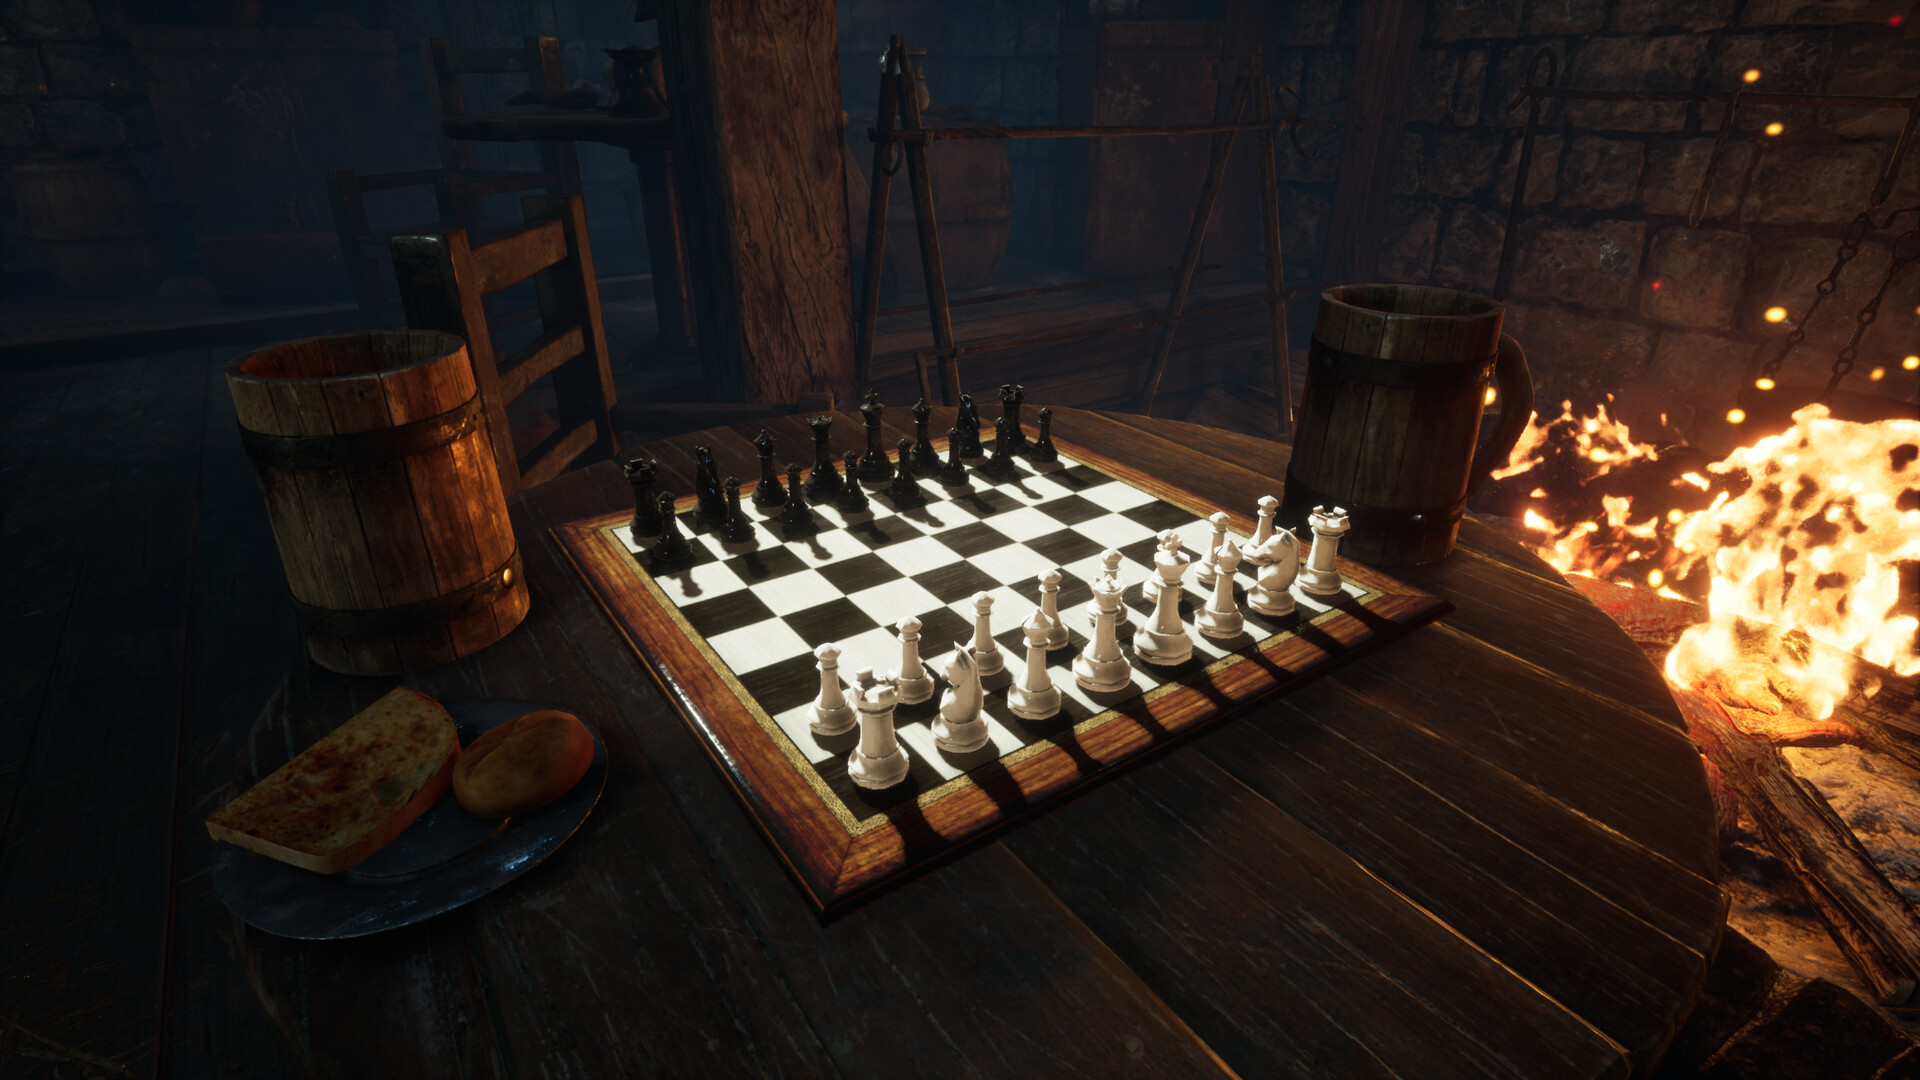 Comunidade Steam :: FPS Chess